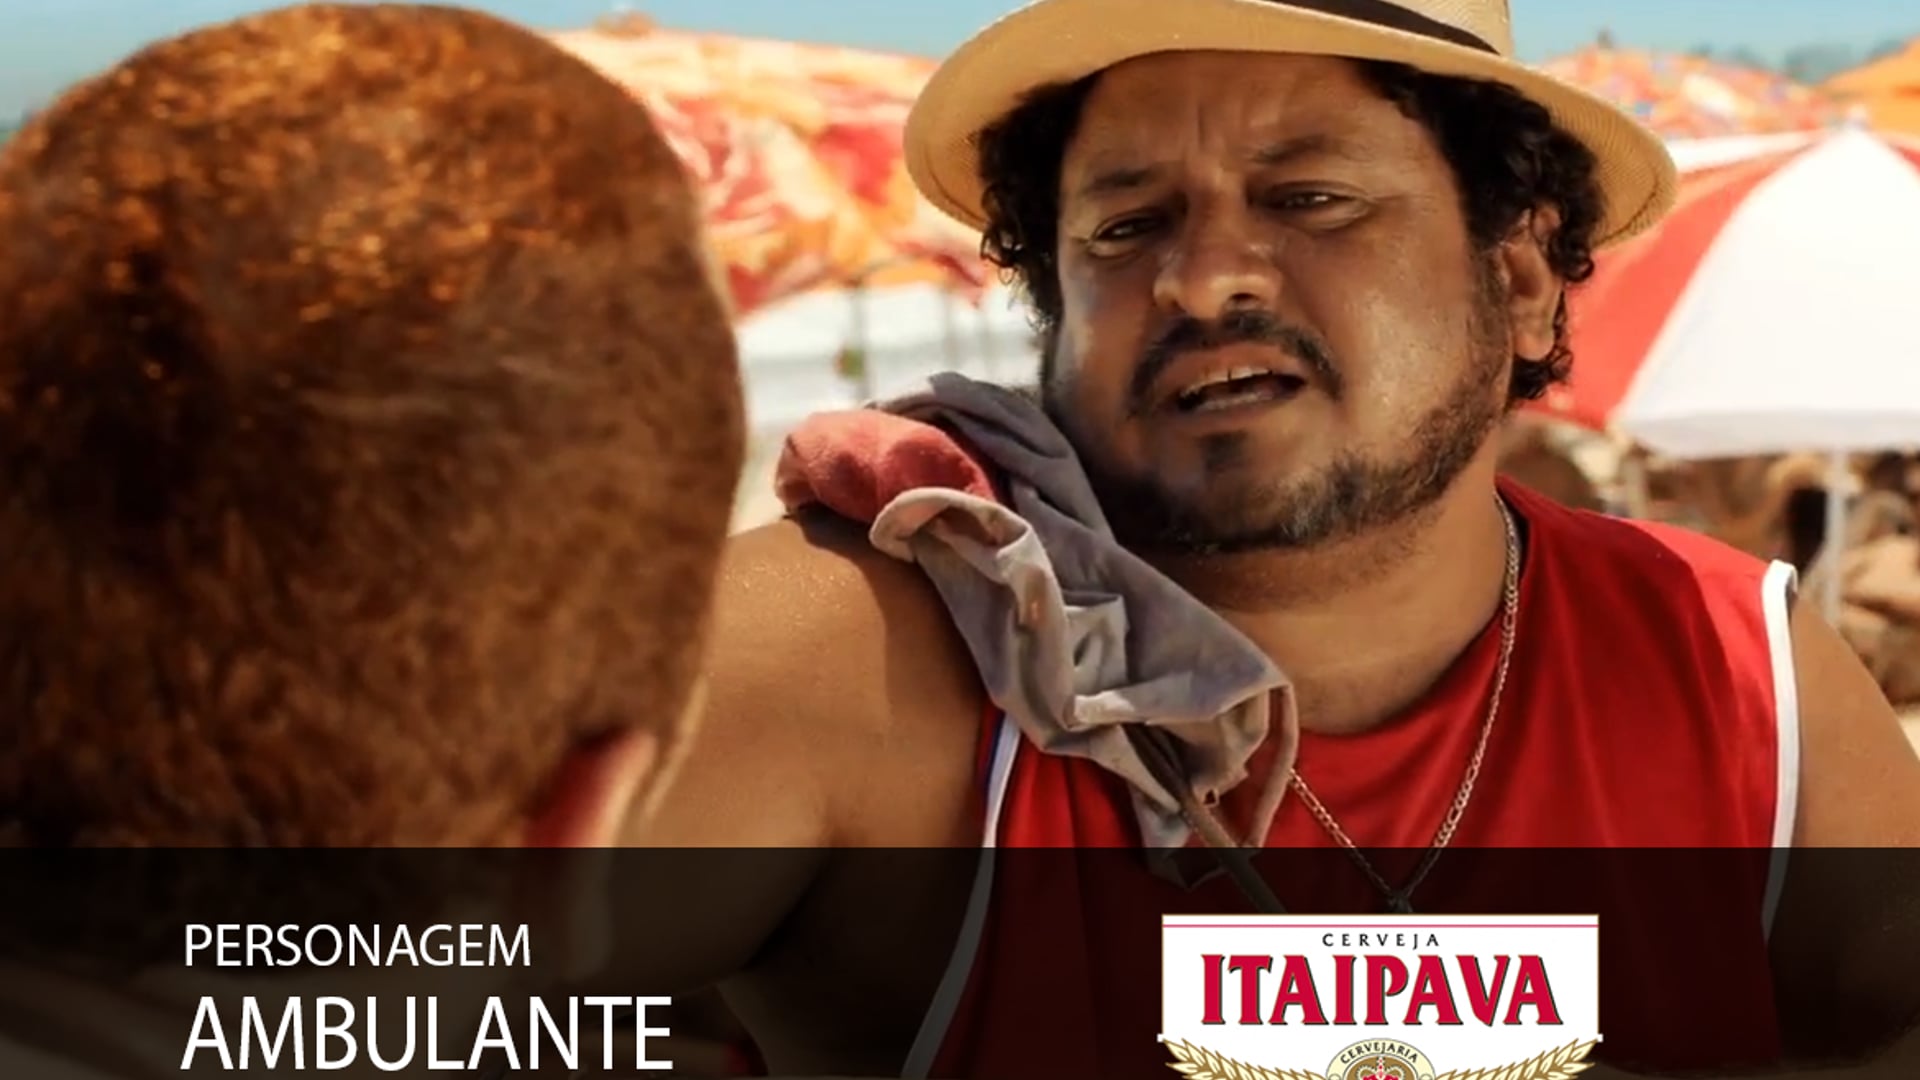 Hilton Castro - comercial "Itaipava -  Areia Quente" personagem: Ambulante